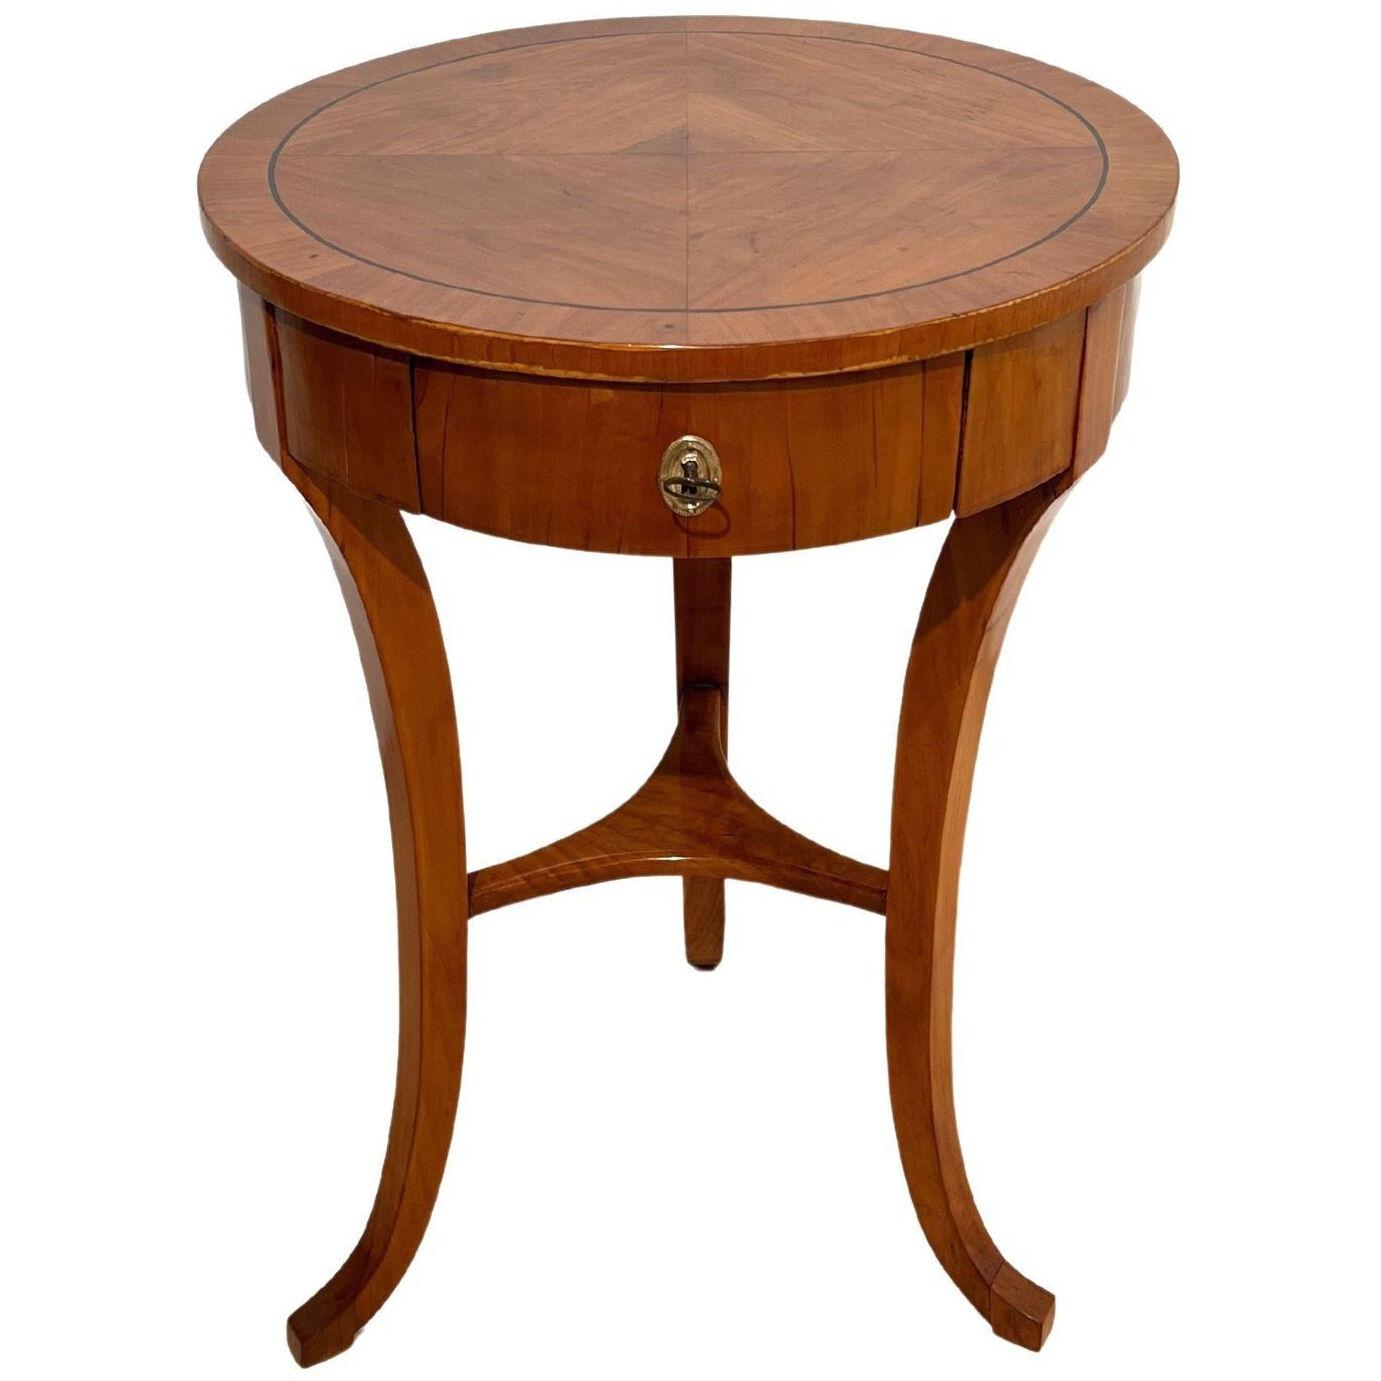 Round three-legged Biedermeier Side Table, Walnut, South Germany circa 1820